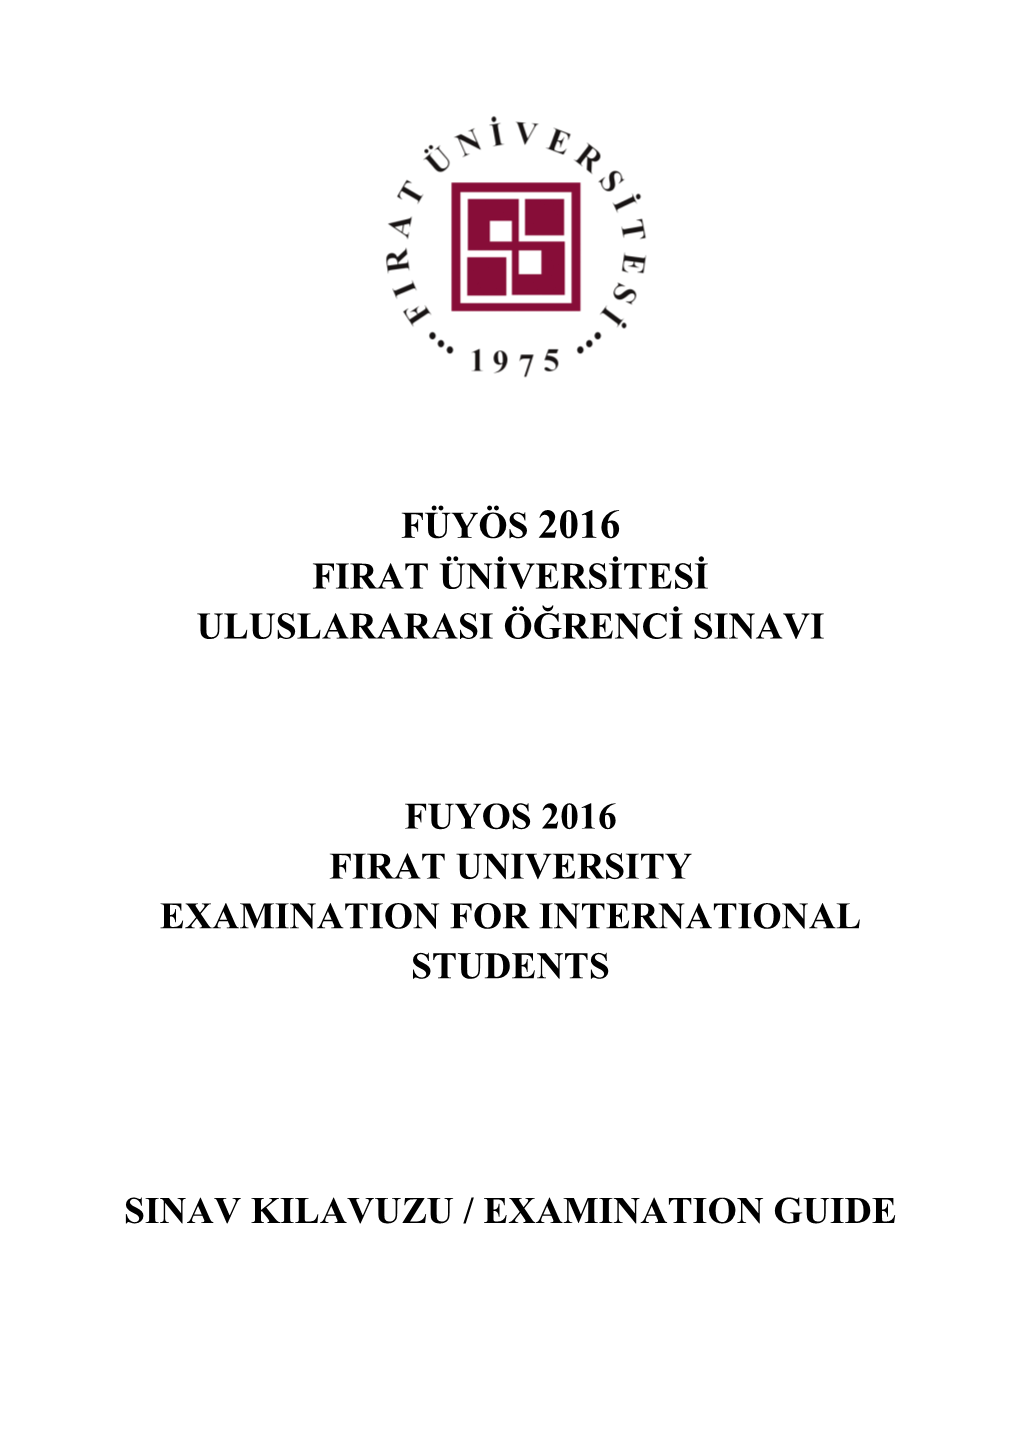 Füyös 2016 Firat Üniversitesi Uluslararasi Öğrenci Sinavi